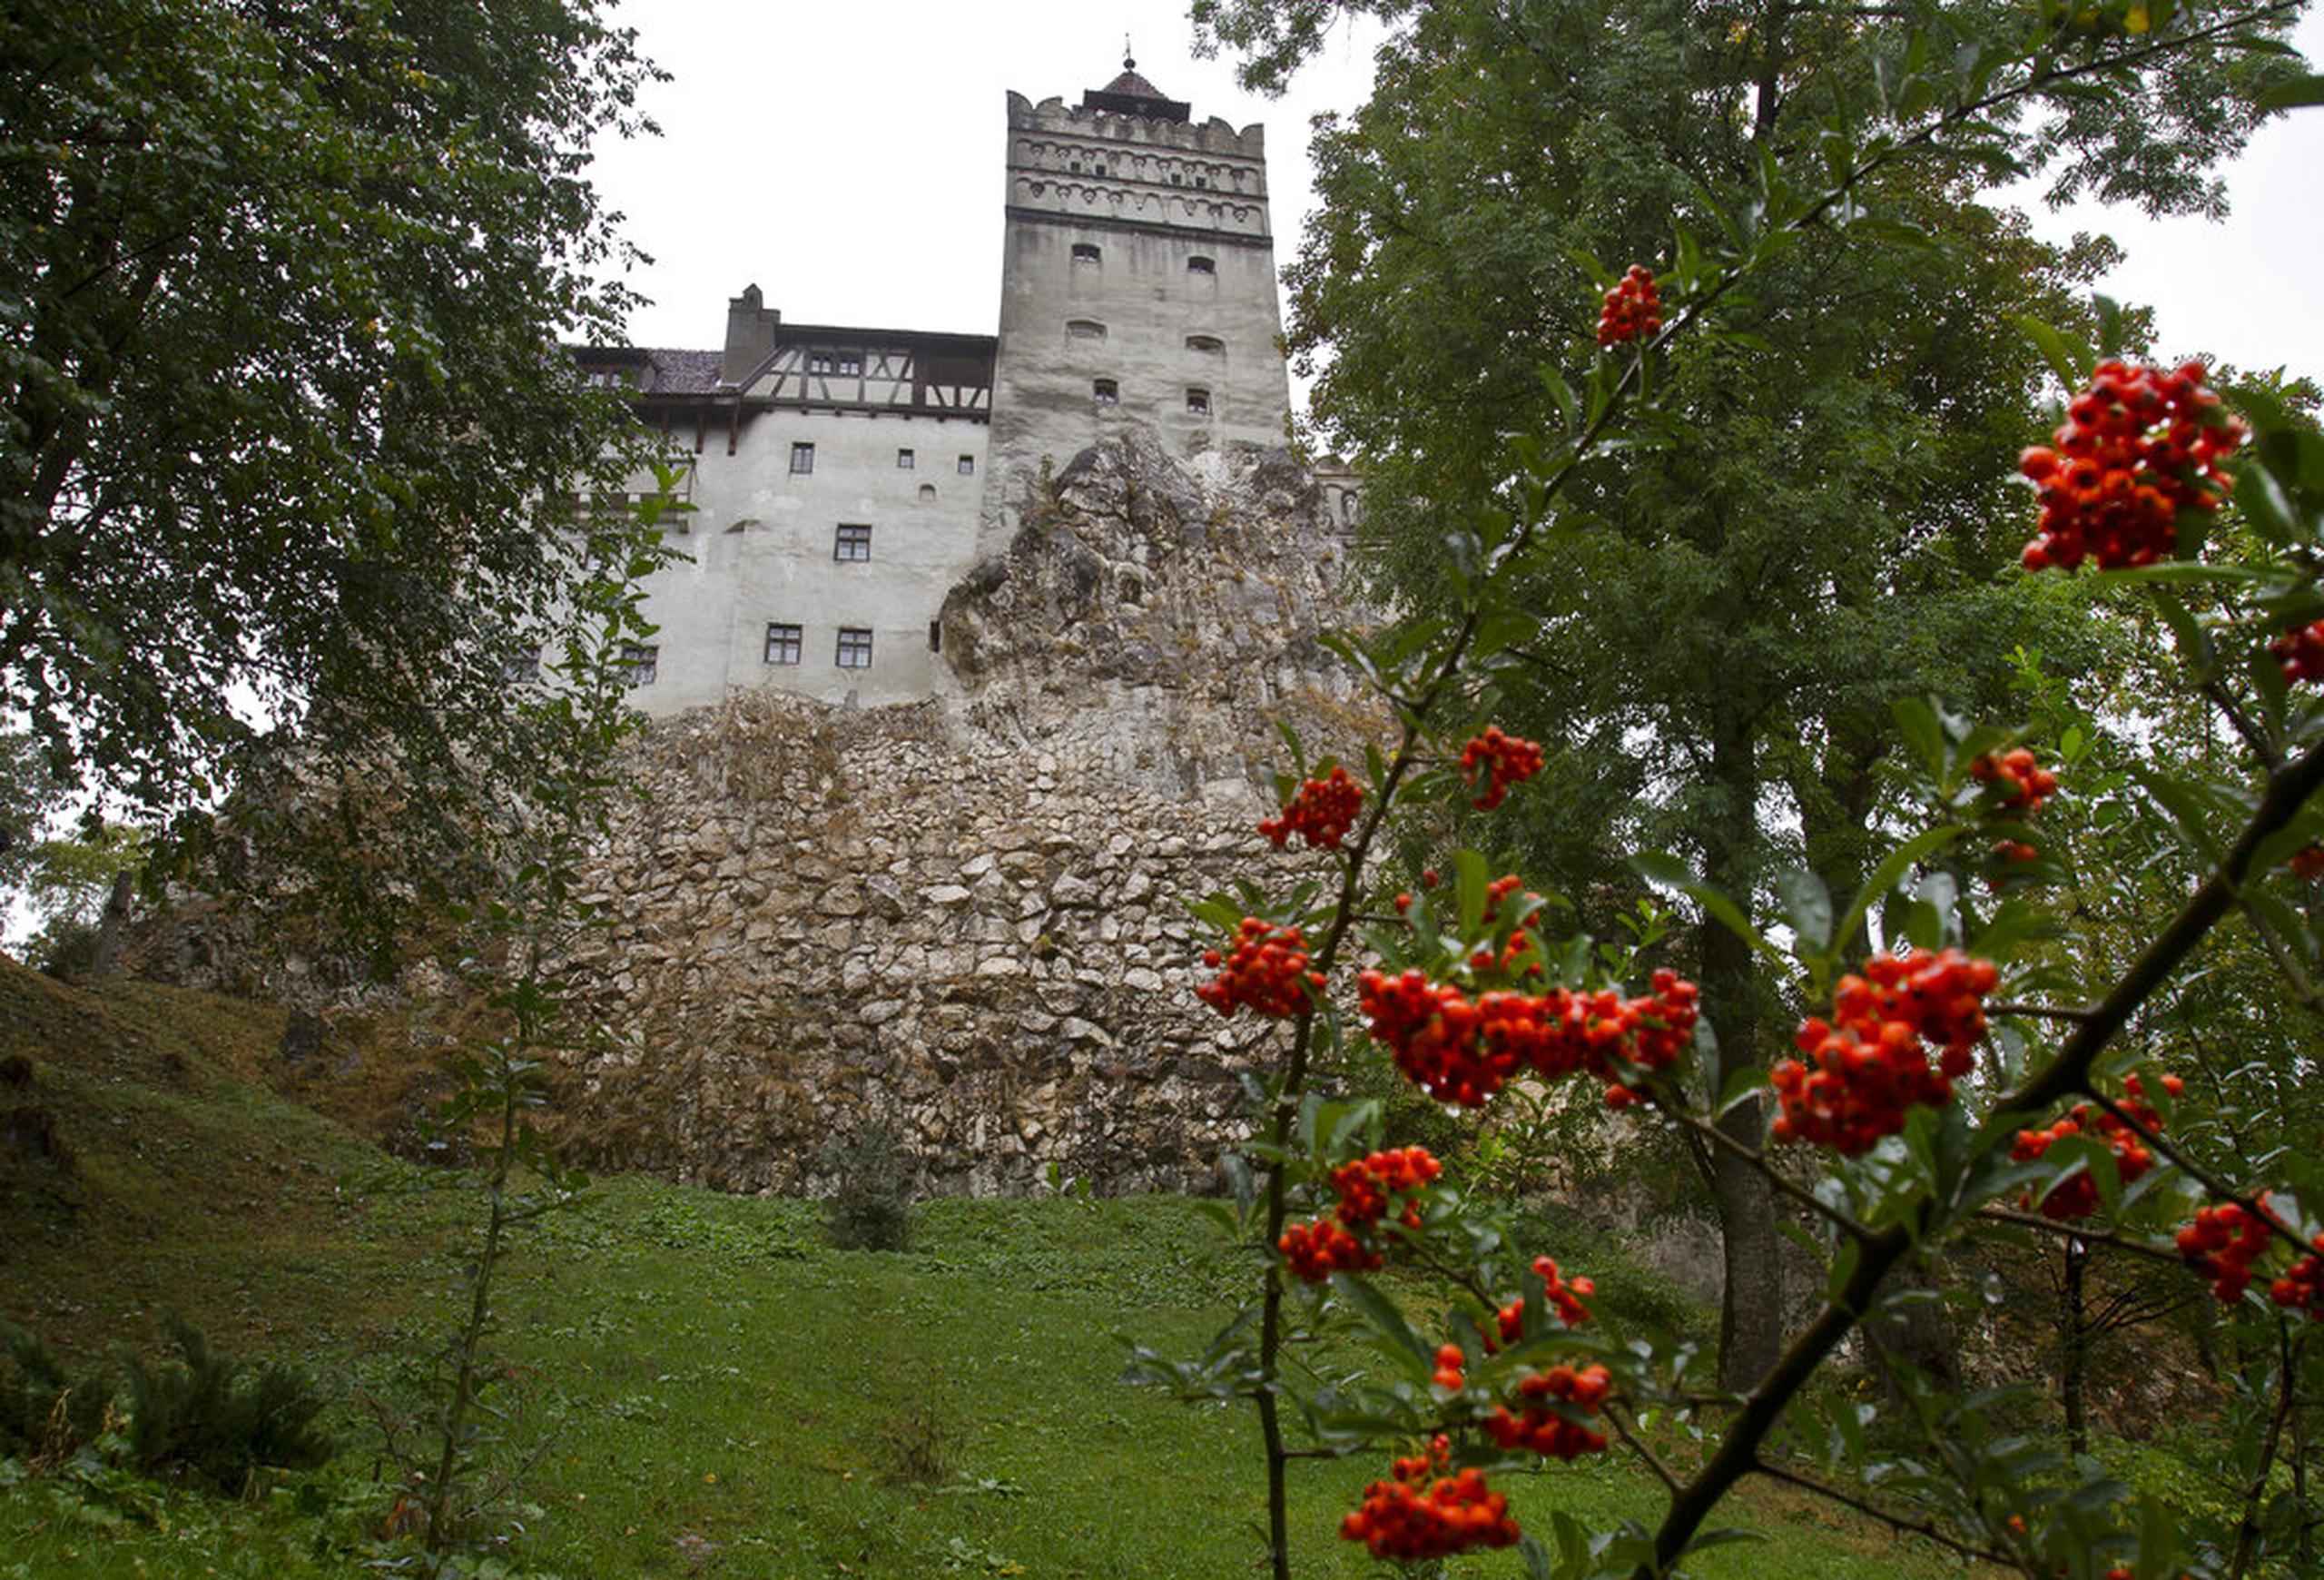 El Castillo de Bran, más conocido como el Castillo de Drácula, ubica en la región central de Transilvania en Rumania.